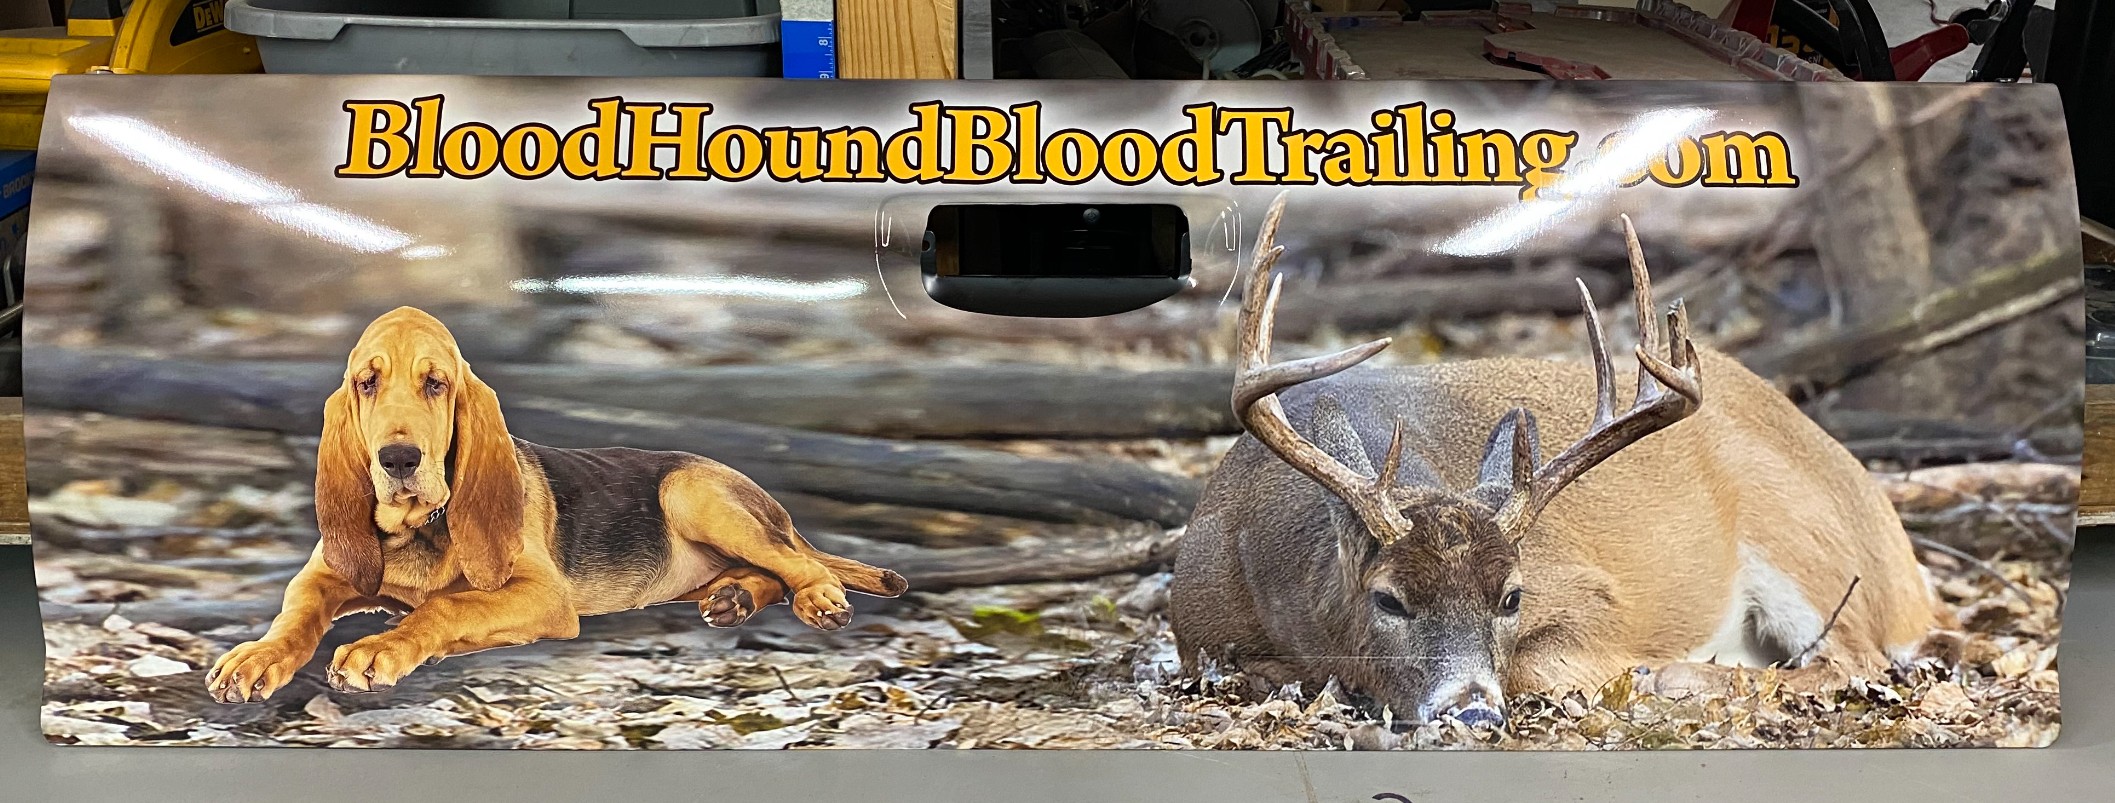 Bloodhound Bloodtrailing - 